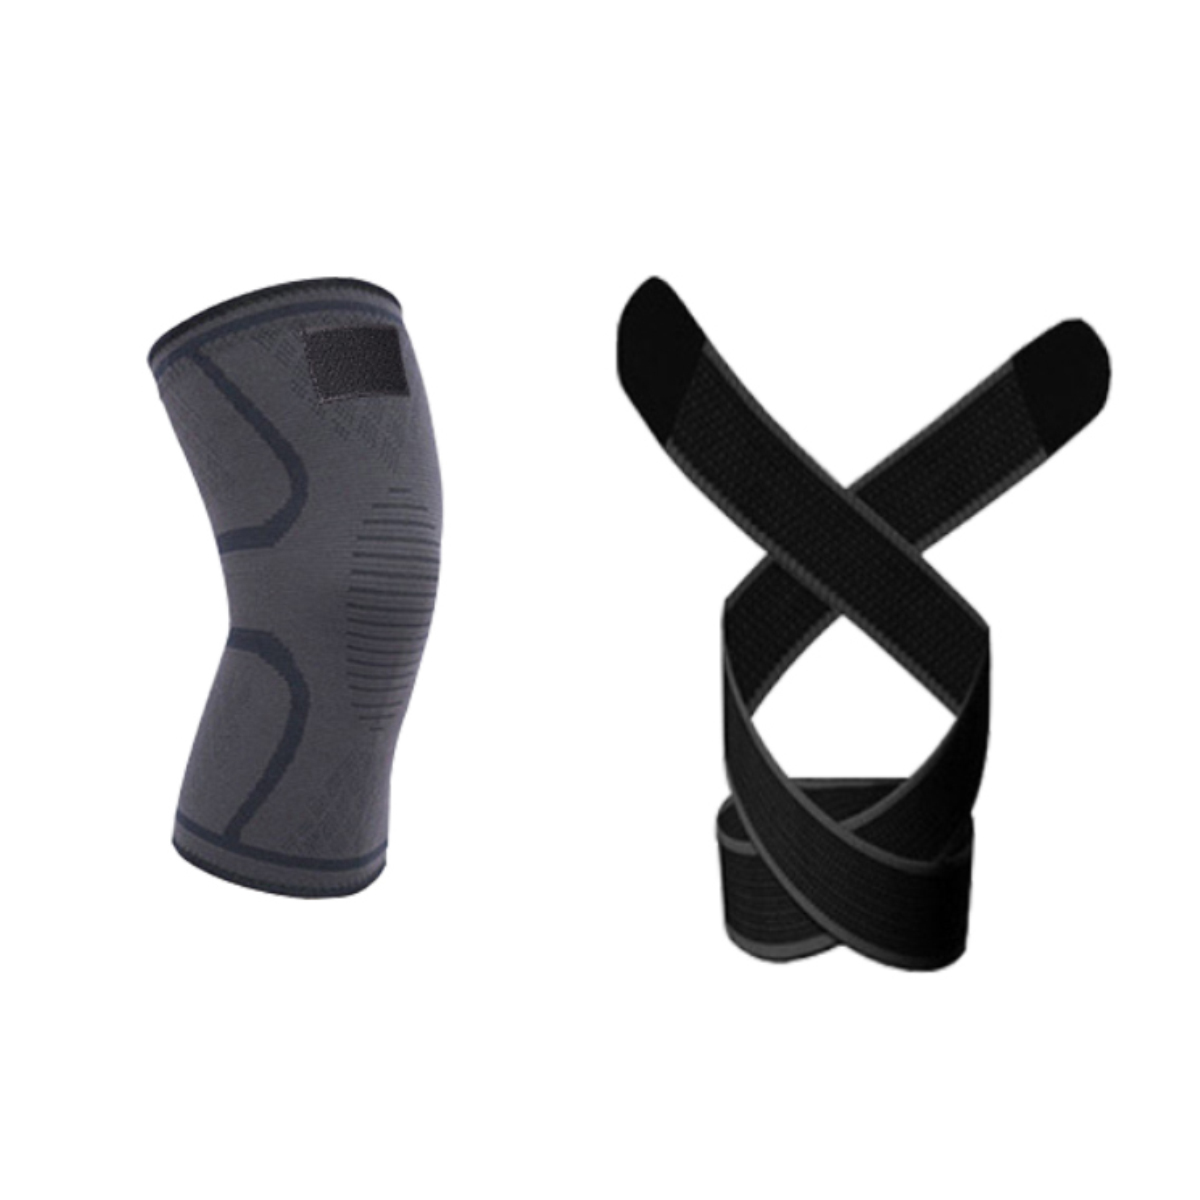 Hình ảnh Băng quấn bó gối ( 1 cái ) bảo vệ đầu gối , khớp gối 2 trong 1 , Giúp tránh chấn thương , tăng khả năng vận động linh hoạt CLEACCO  - Hàng chính hãng BORO SPORT